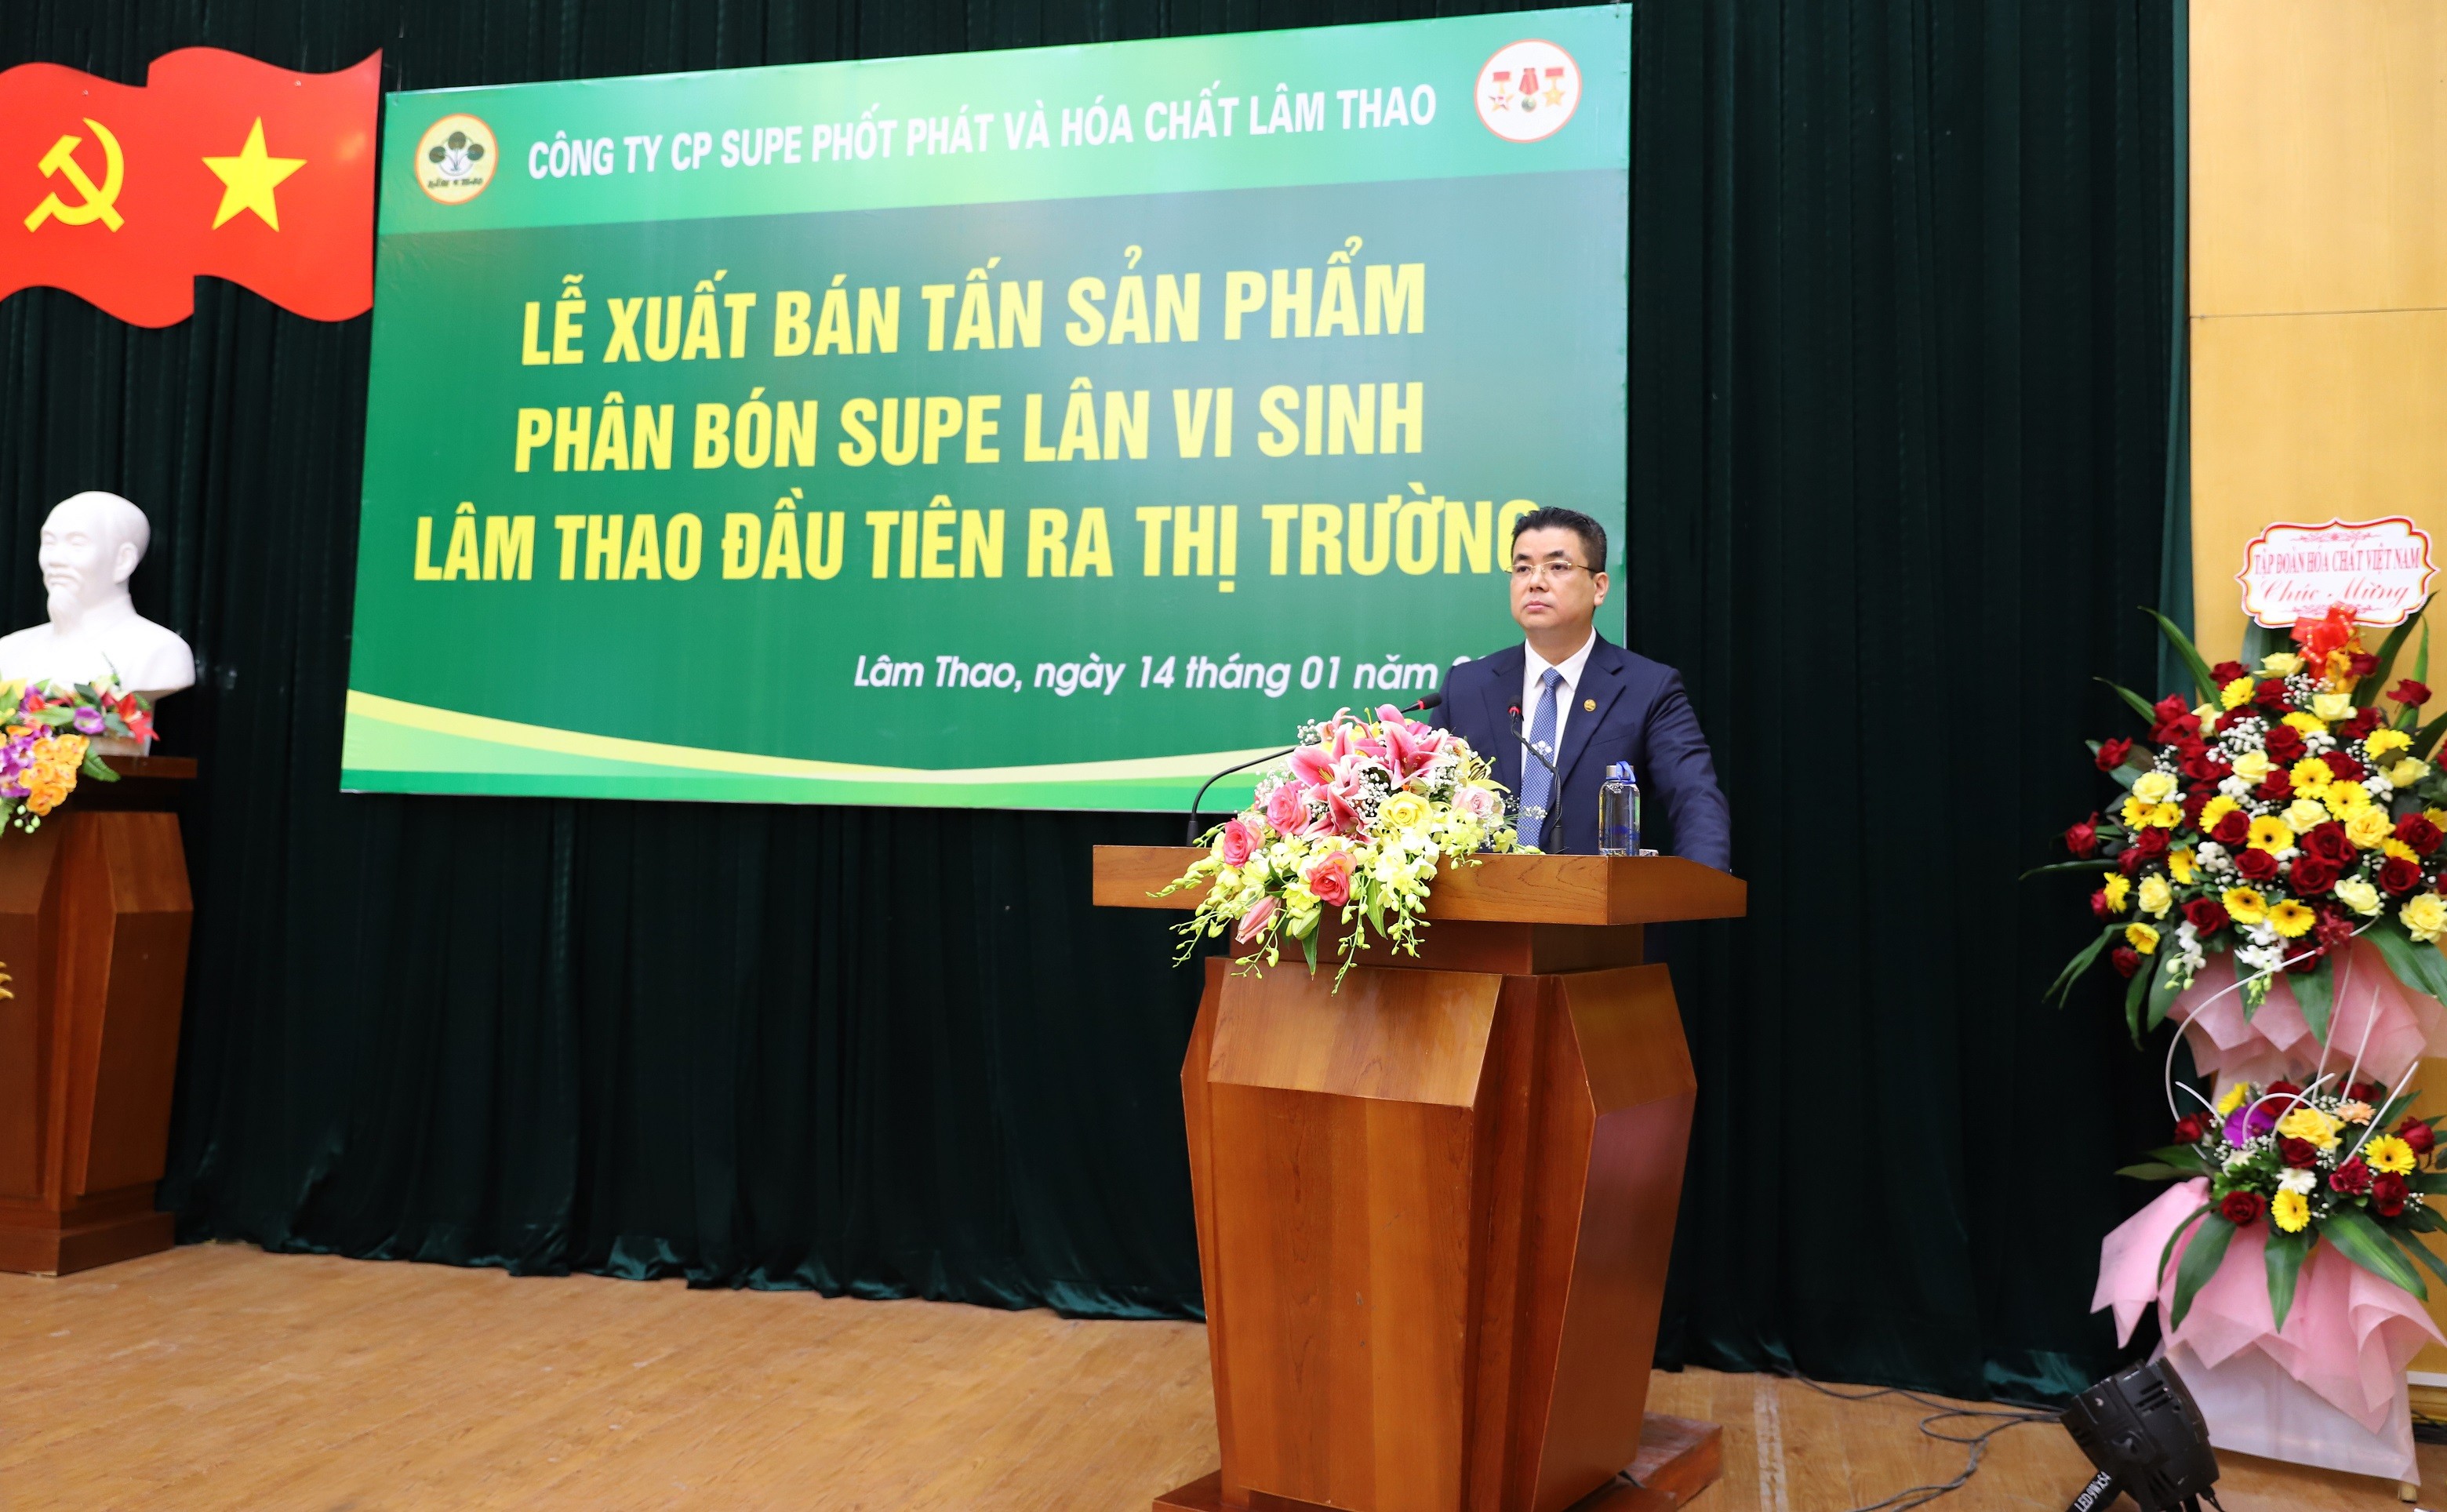 Công ty tổ chức bán sản phẩm phân bón Supe lân vi sinh Lâm Thao đầu tiên ra thị trường